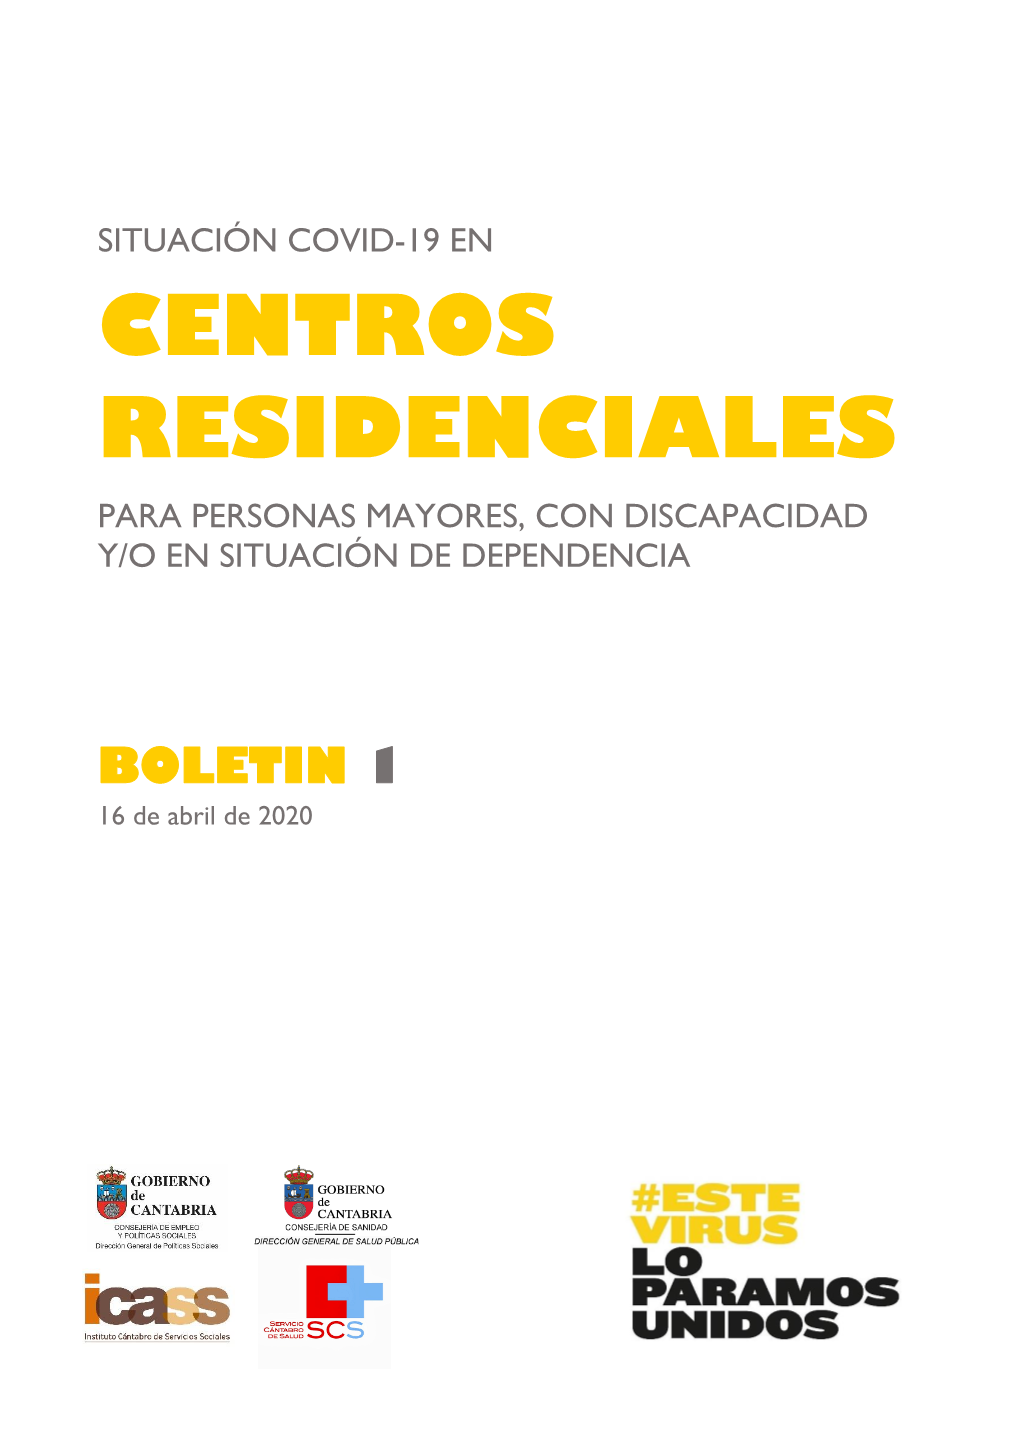 Centros Residenciales Para Personas Mayores, Con Discapacidad Y/O En Situación De Dependencia